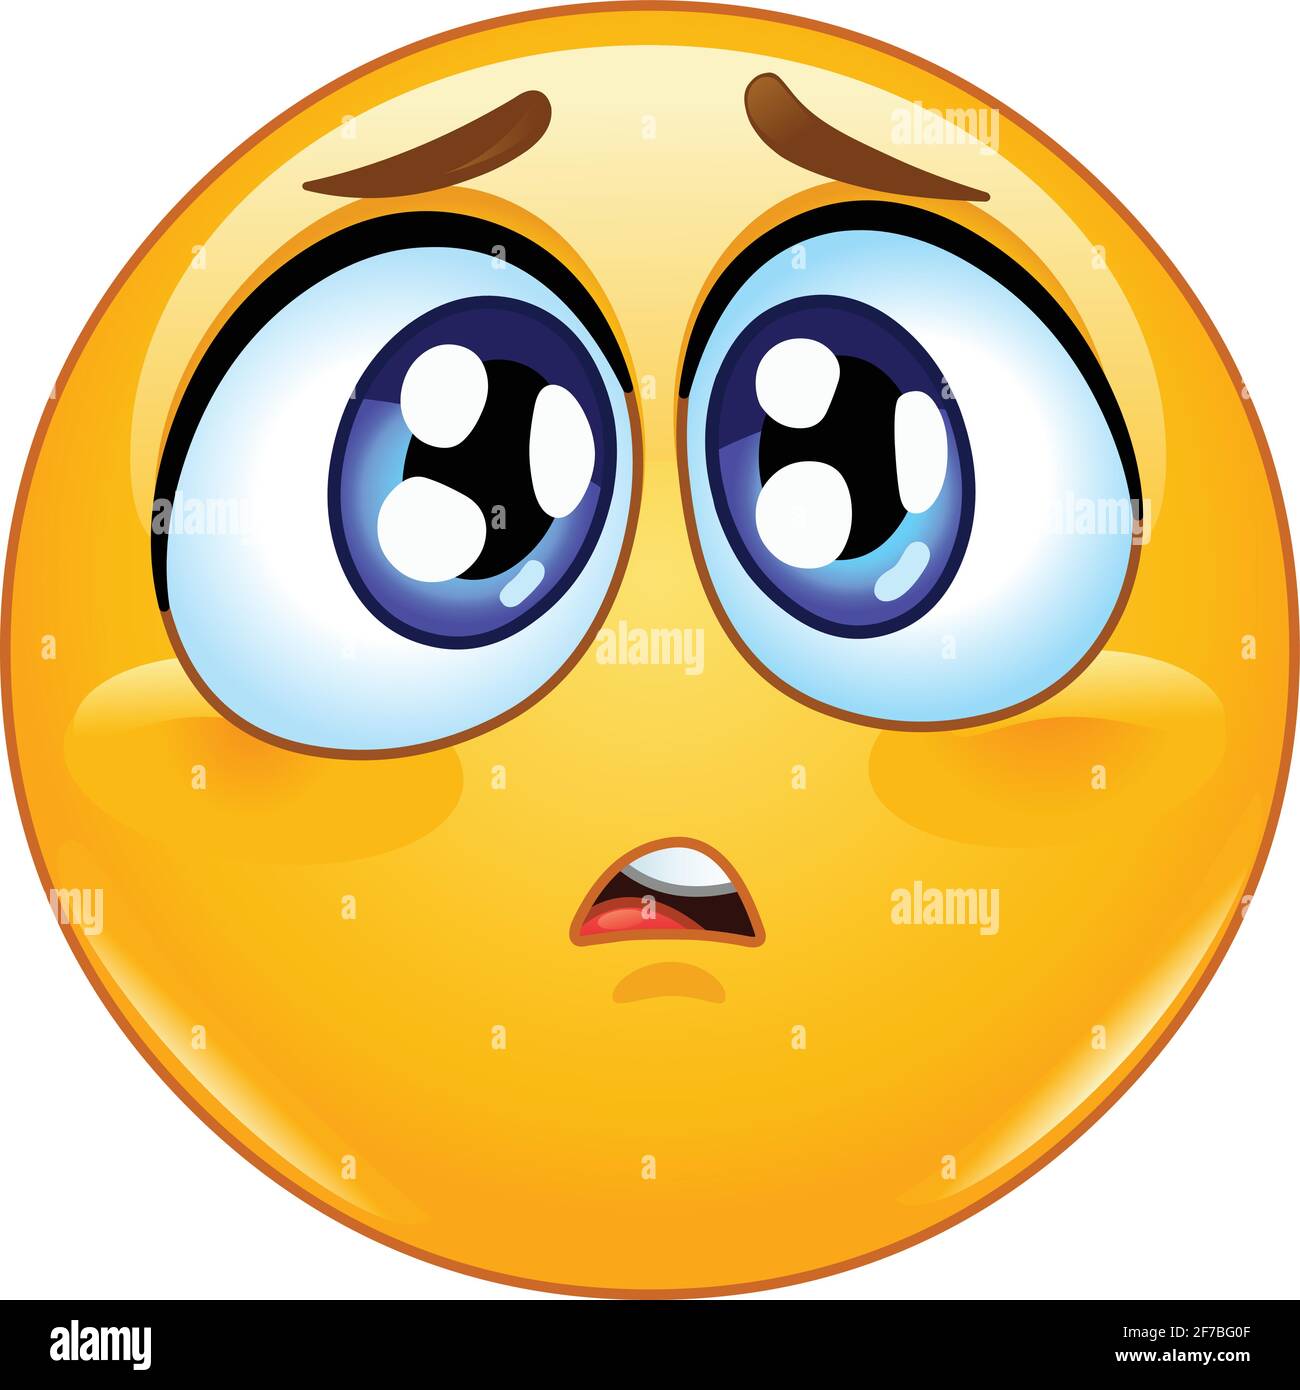 Emoji-Emoticon mit einem traurigen oder besorgten Ausdruck. Stock Vektor